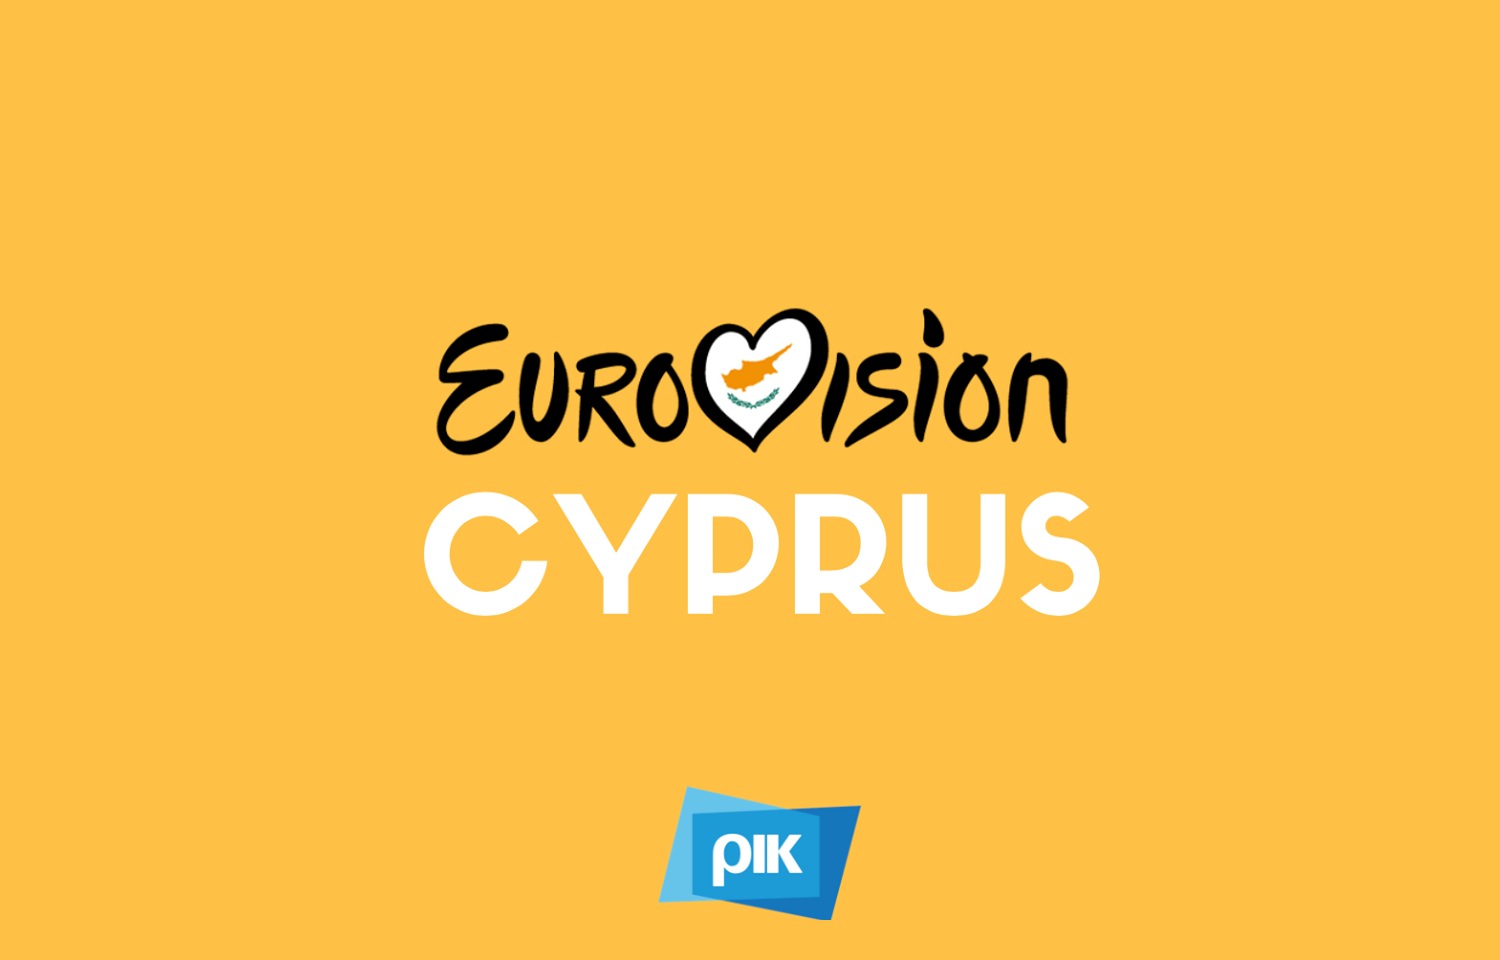 Αποτέλεσμα εικόνας για eurovision 2018 cyprus logo